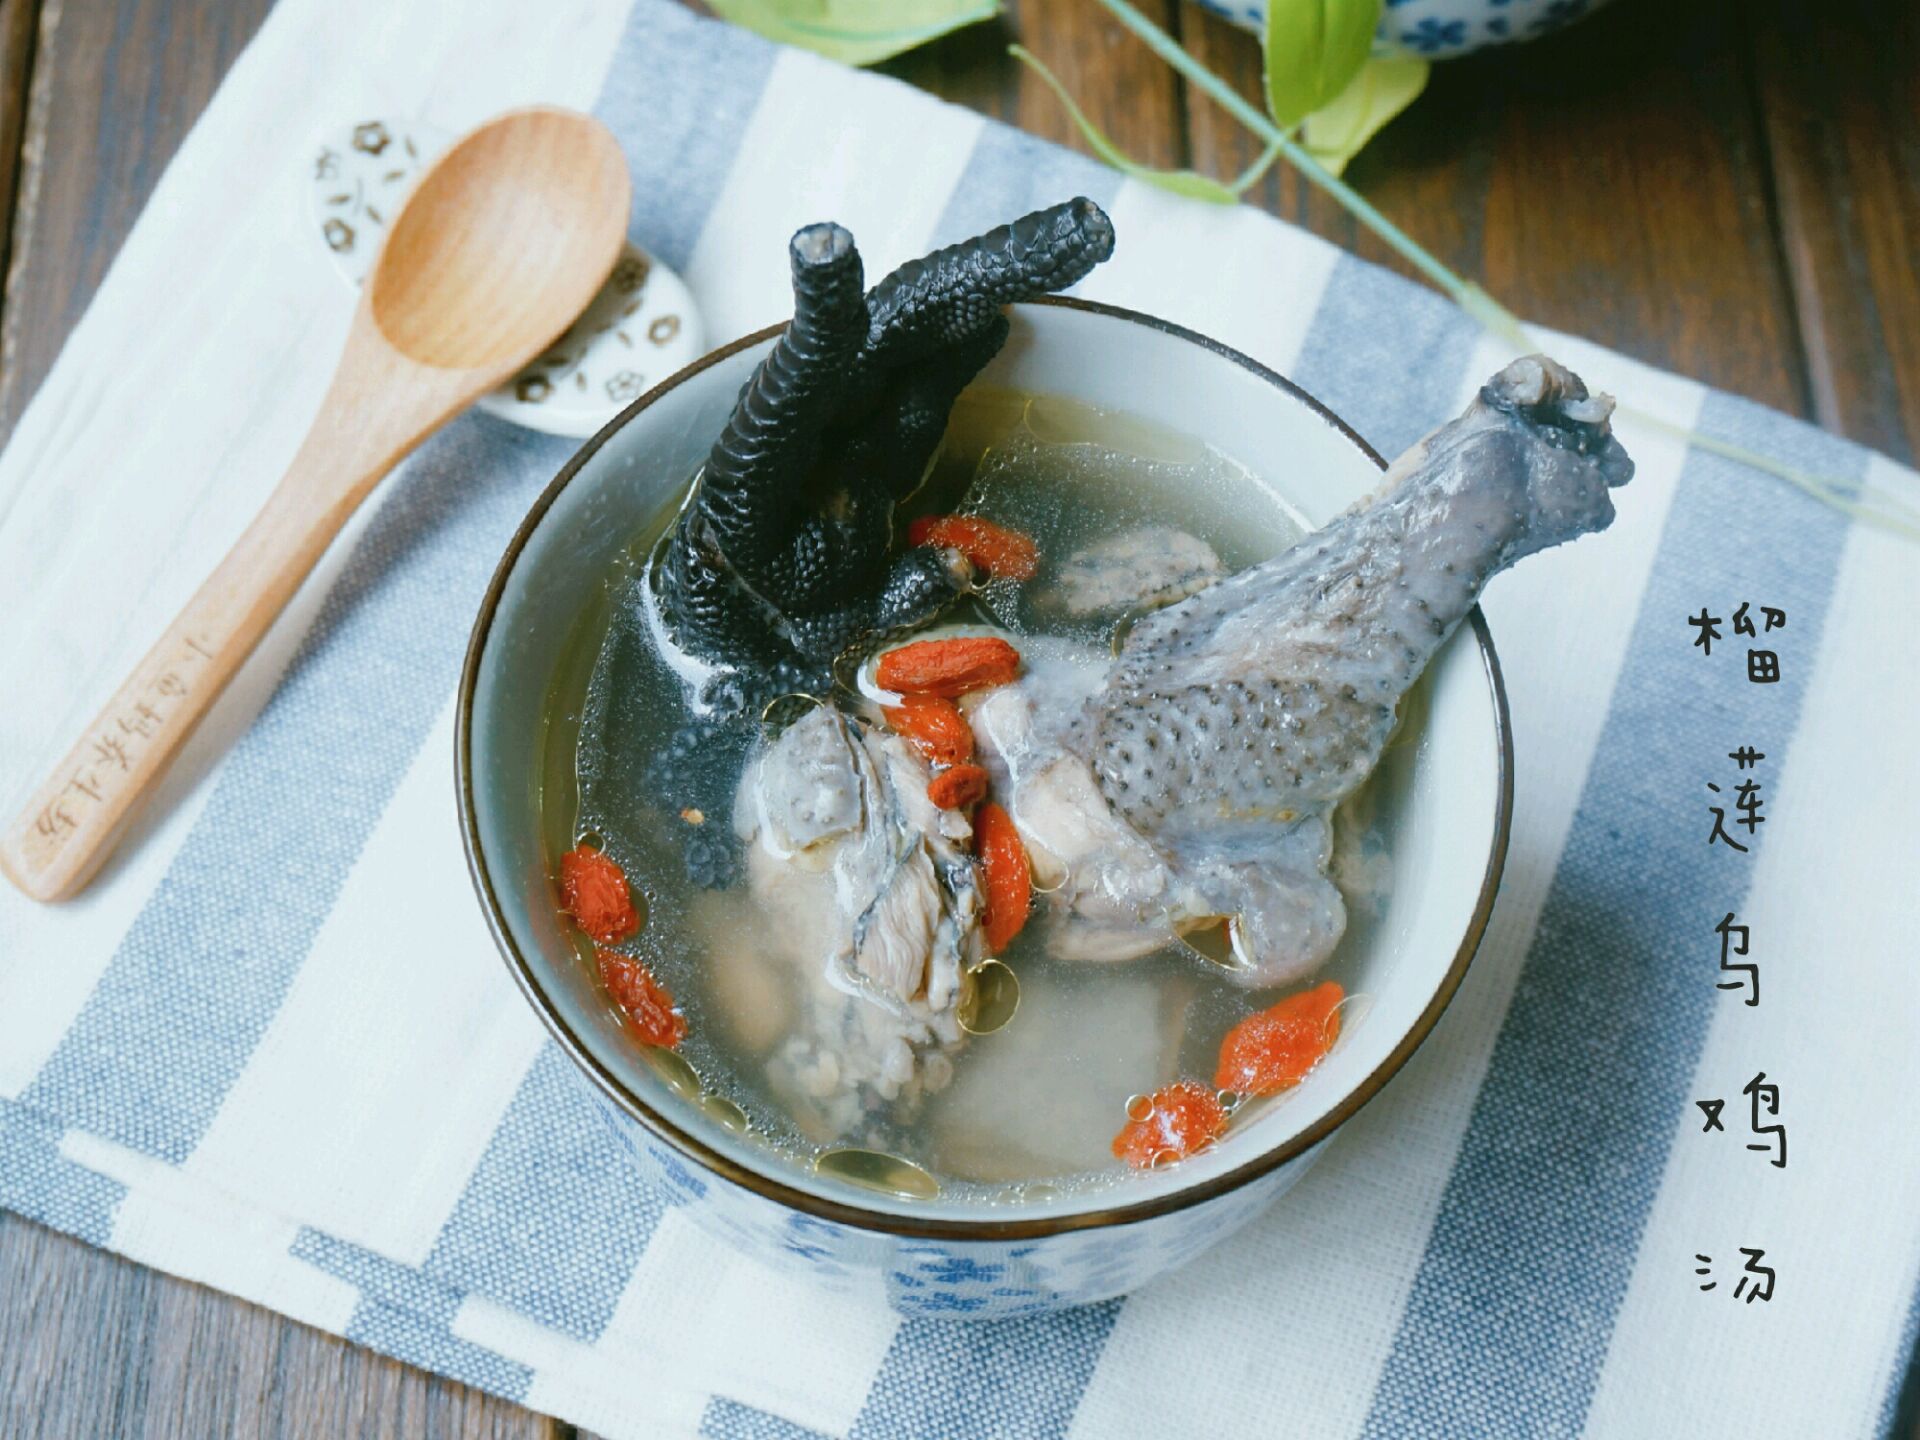 煲一碗浓浓爱意的汤——榴莲乌鸡汤